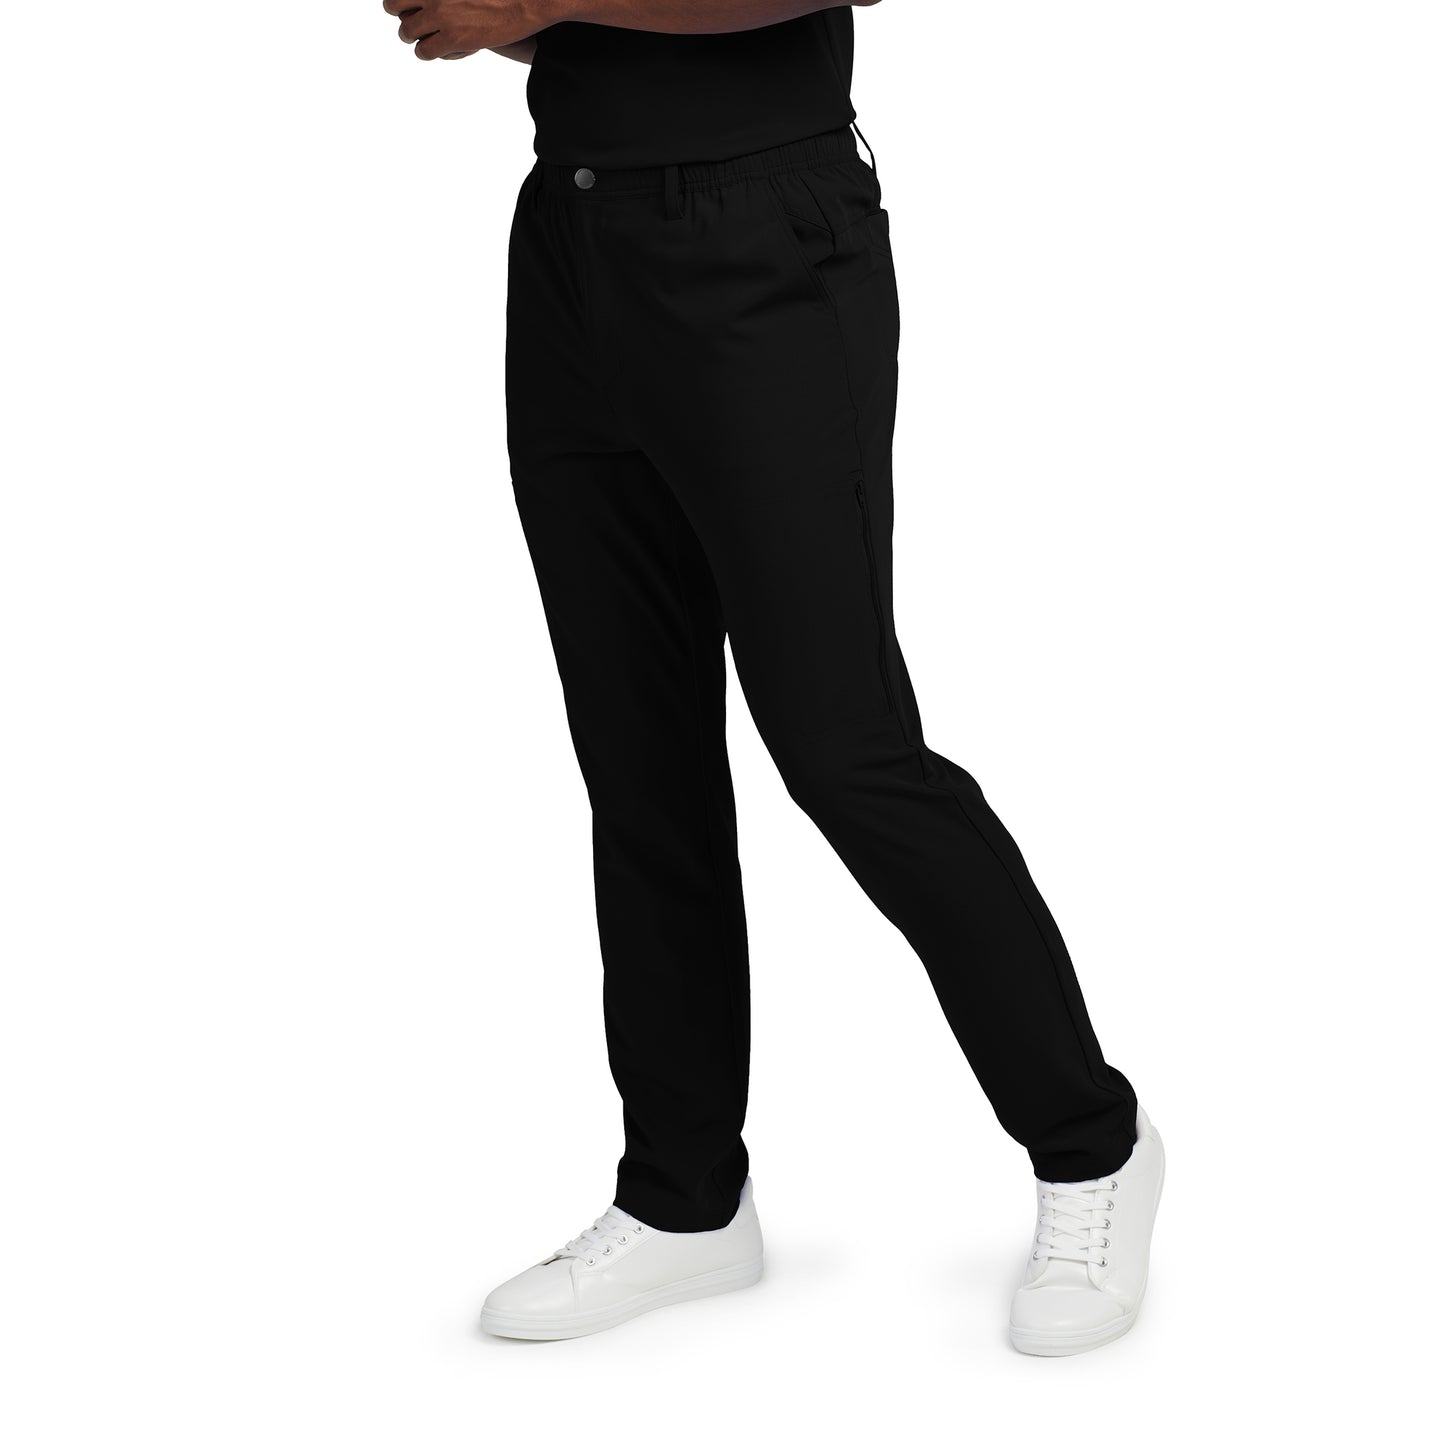  Vue latérale pantalon cargo 7 poches à jambe droite pour homme CRFT White Cross #WB418 couleur noir